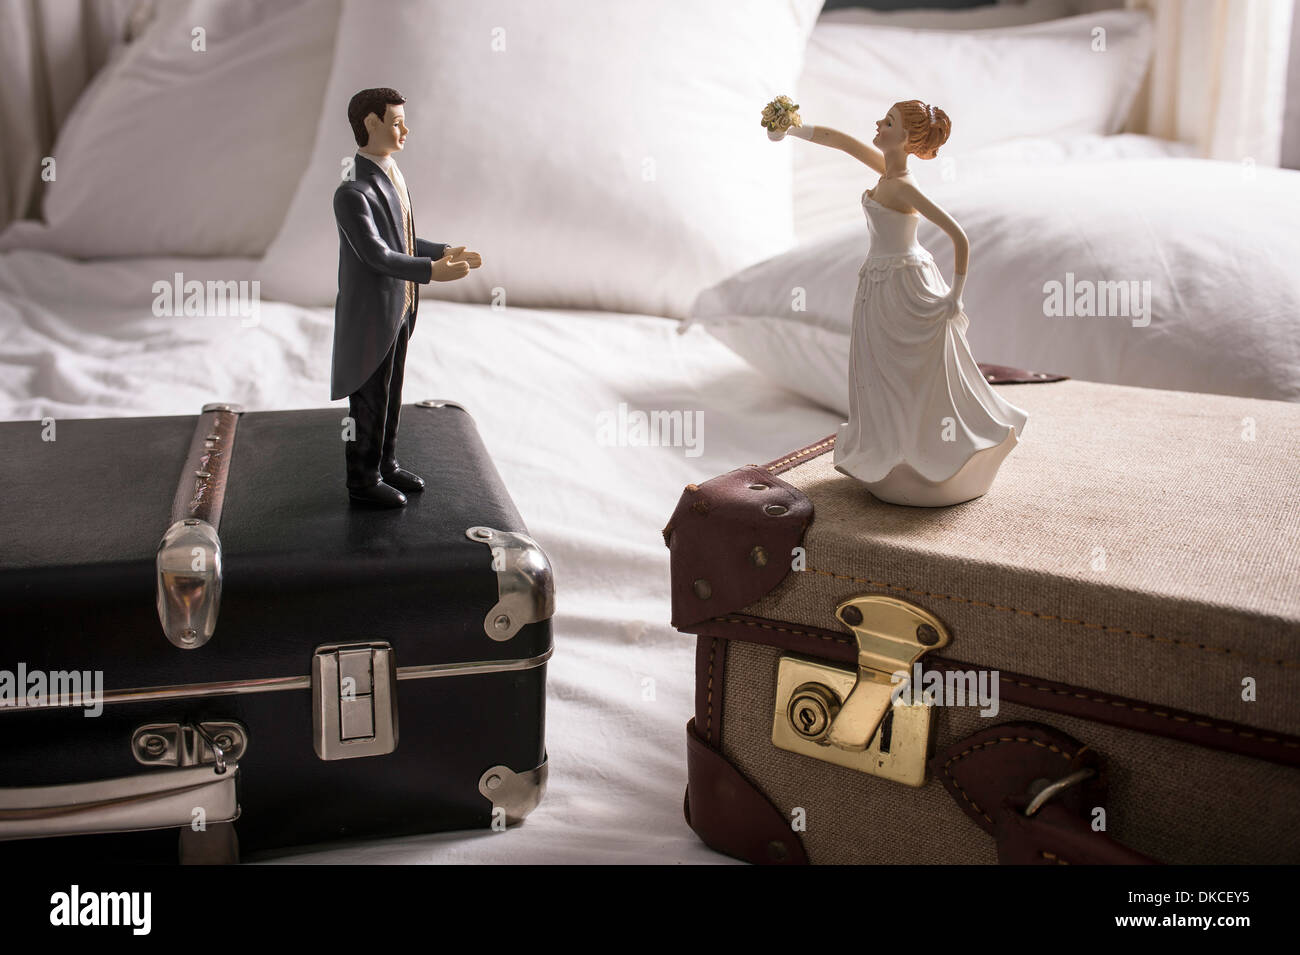 Hochzeit-Figuren auf separaten Koffer Stockfotografie - Alamy